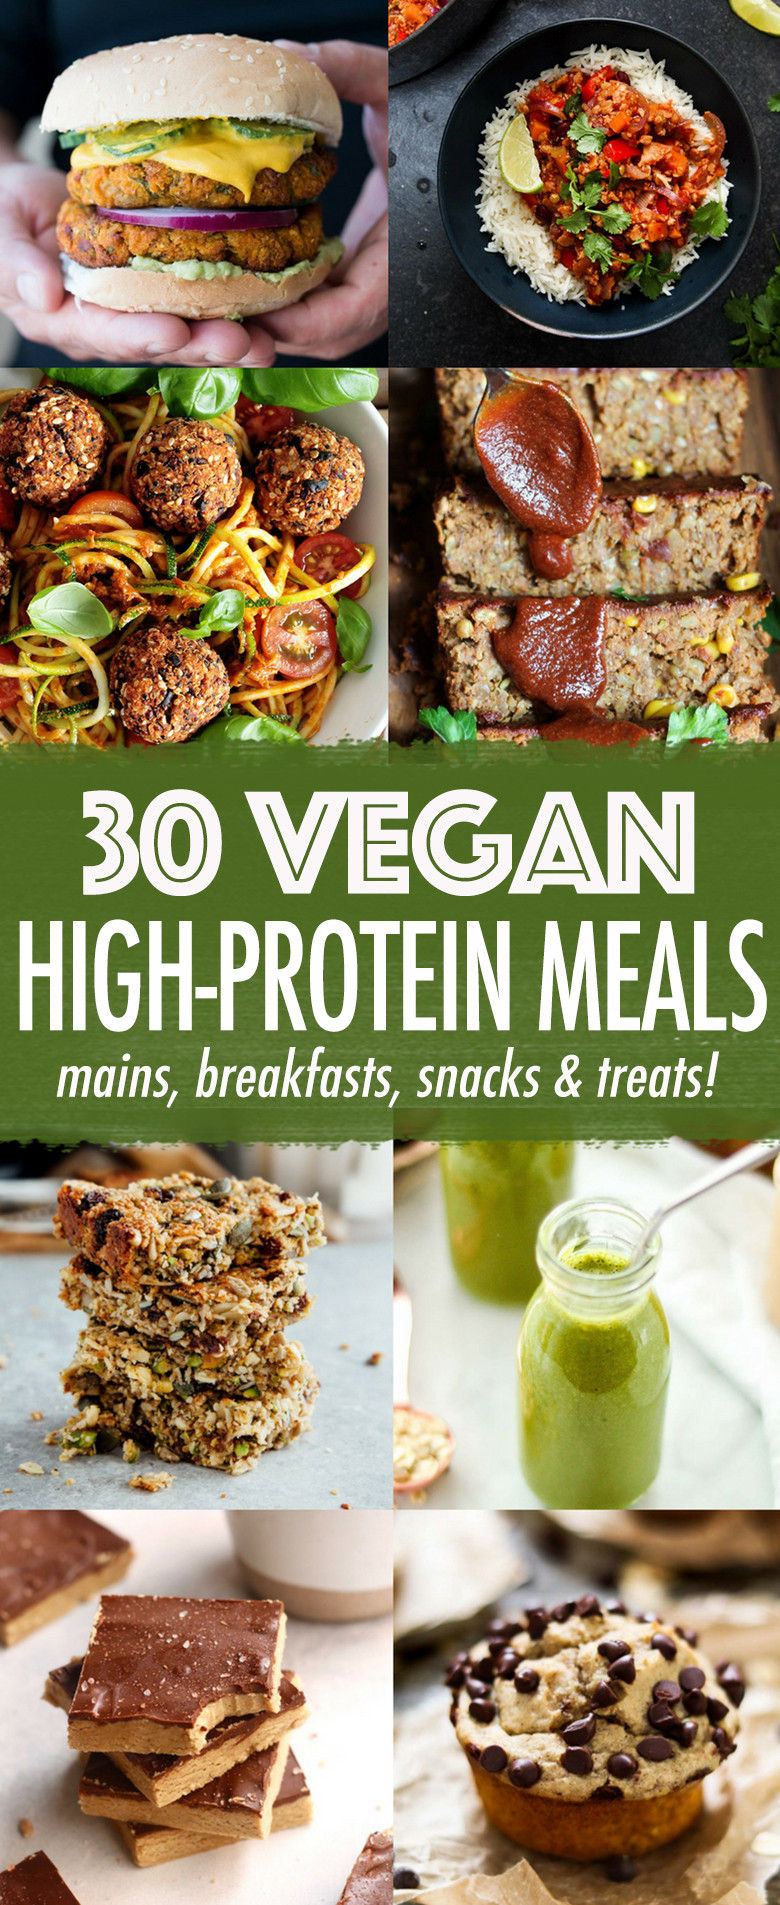 Vegan Protein Meals
 30 High protein Vegan Meals Wallflower Kitchen